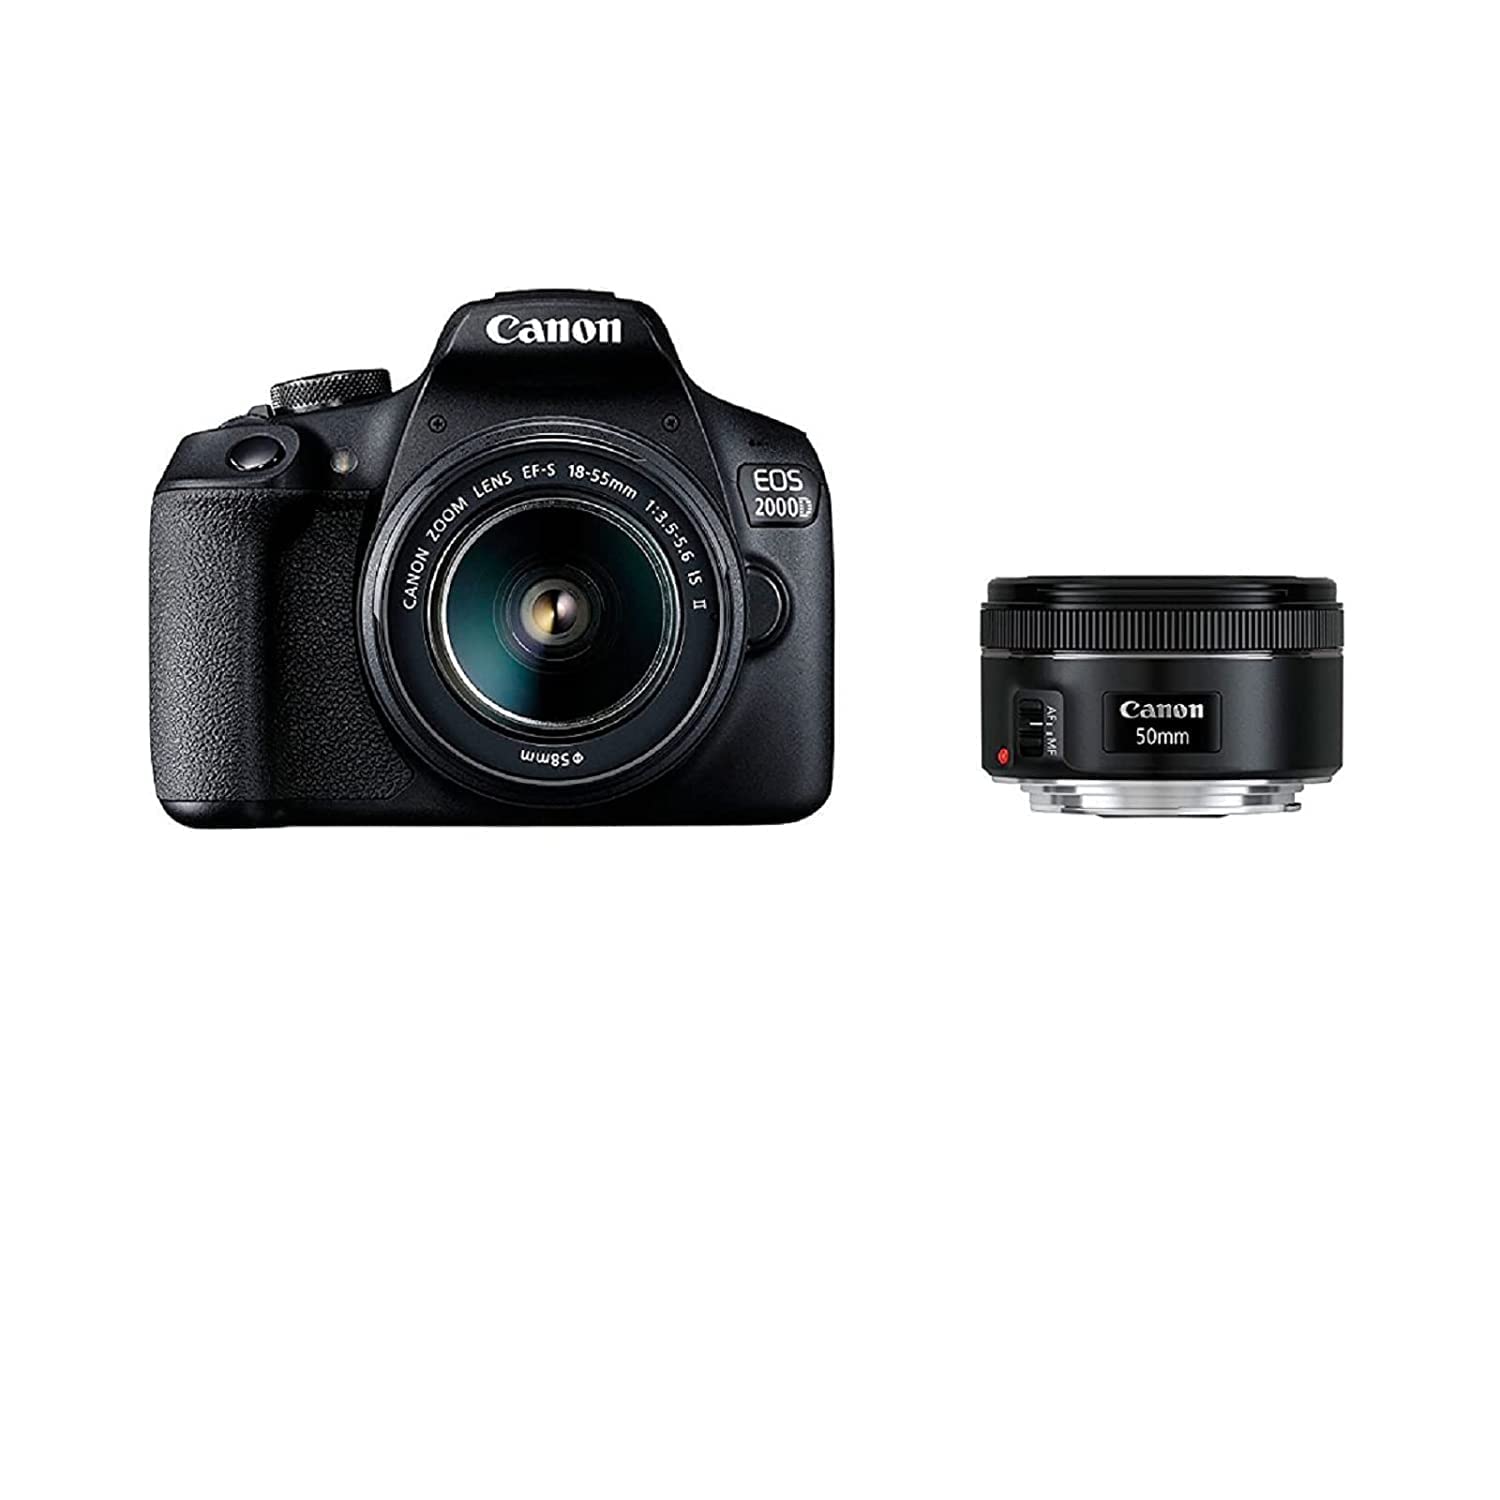 Canon EOS 2000D Spiegelreflexkamera (24,1 MP, DIGIC 4+, 7,5 cm (3,0 Zoll) LCD, Full-HD, WIFI, APS-C CMOS-Sensor) inkl. Objektive EF-S 18-55mm IS II F3.5-5.6 IS II und EF 50mm F1.8 STM, schwarz